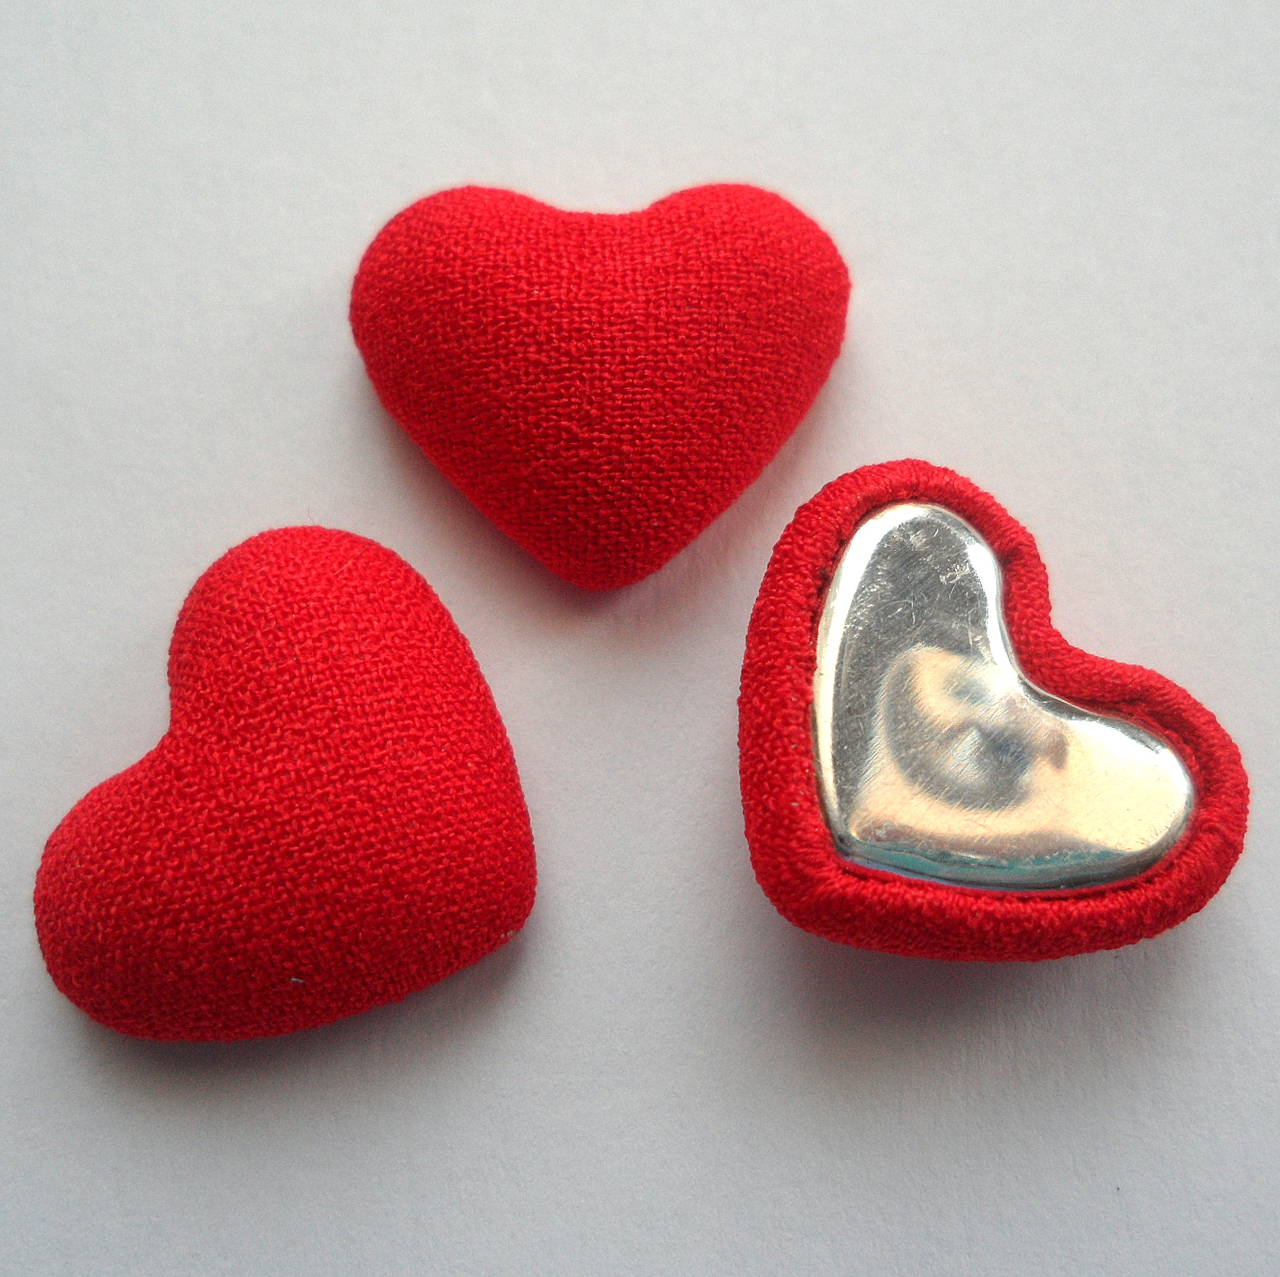 Látkové srdce 15x18mm-1ks (červená)